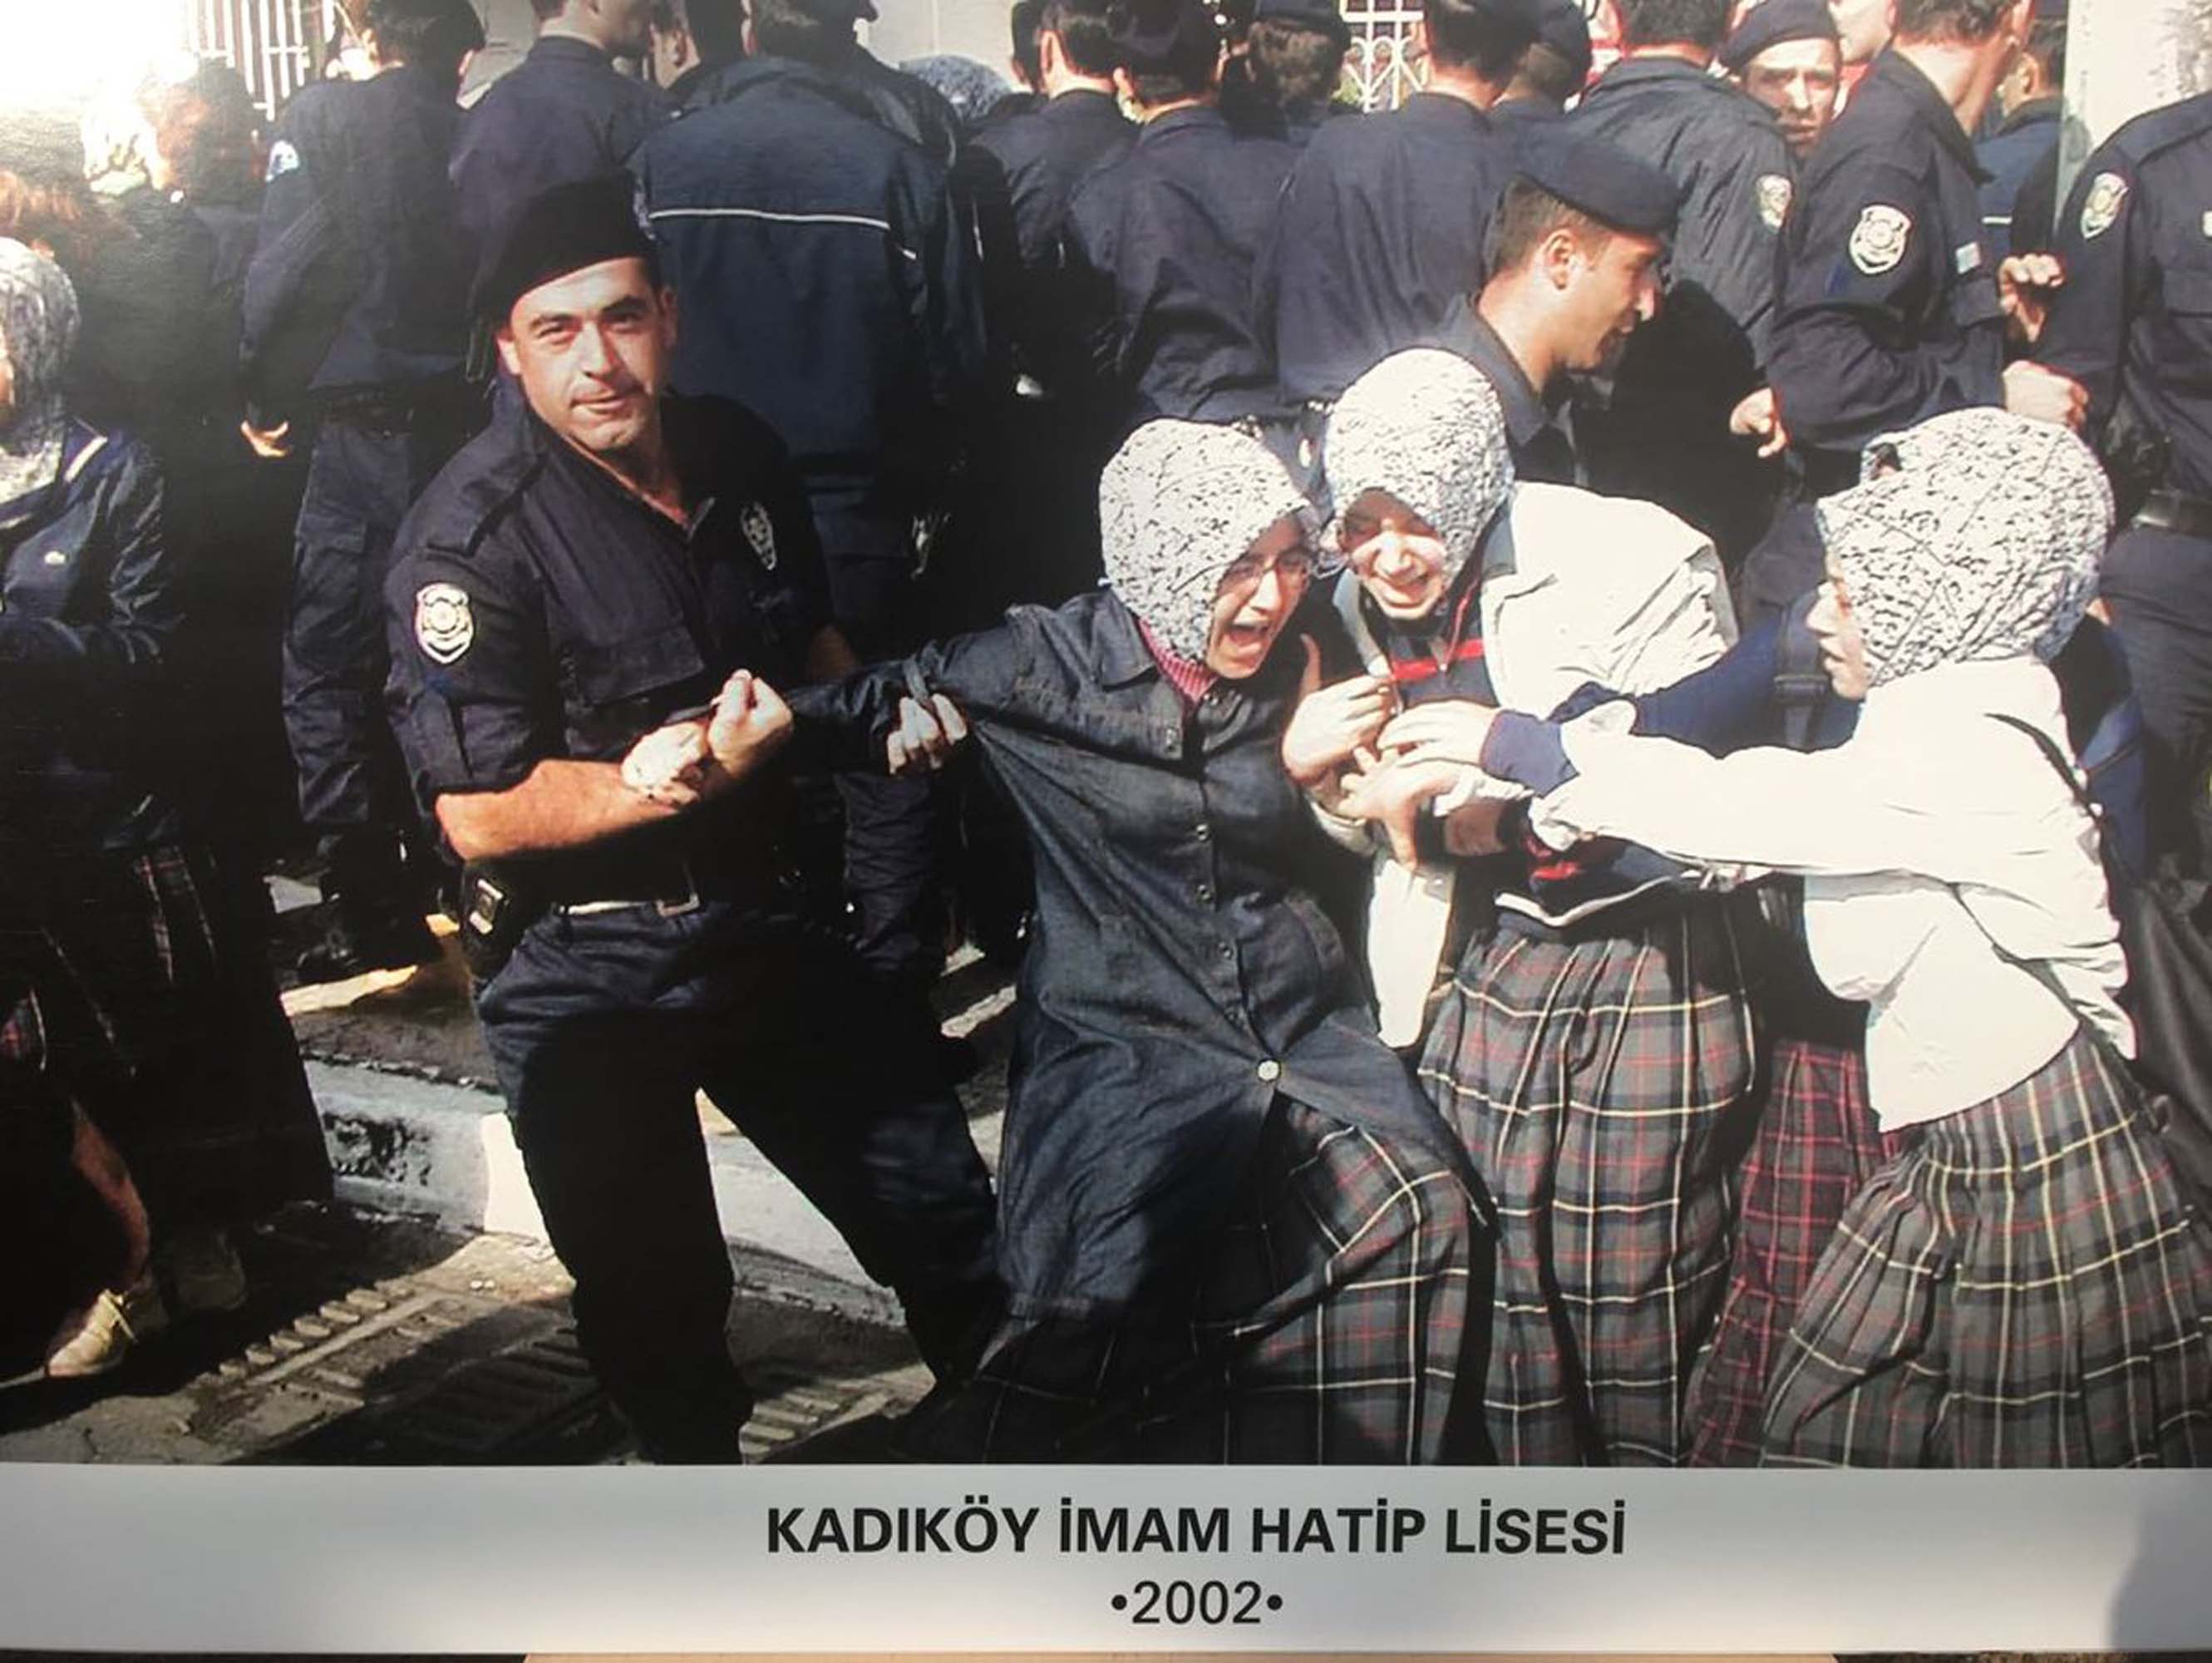 Başörtüsünü aşağılayan sözlere Haklısınız diyerek destek vermişti! Seçim yaklaştıkça tutuşan Kılıçdaroğlu, şimdi 28 Şubat'ta 28 başörtülü kadın ile bir araya gelecek!